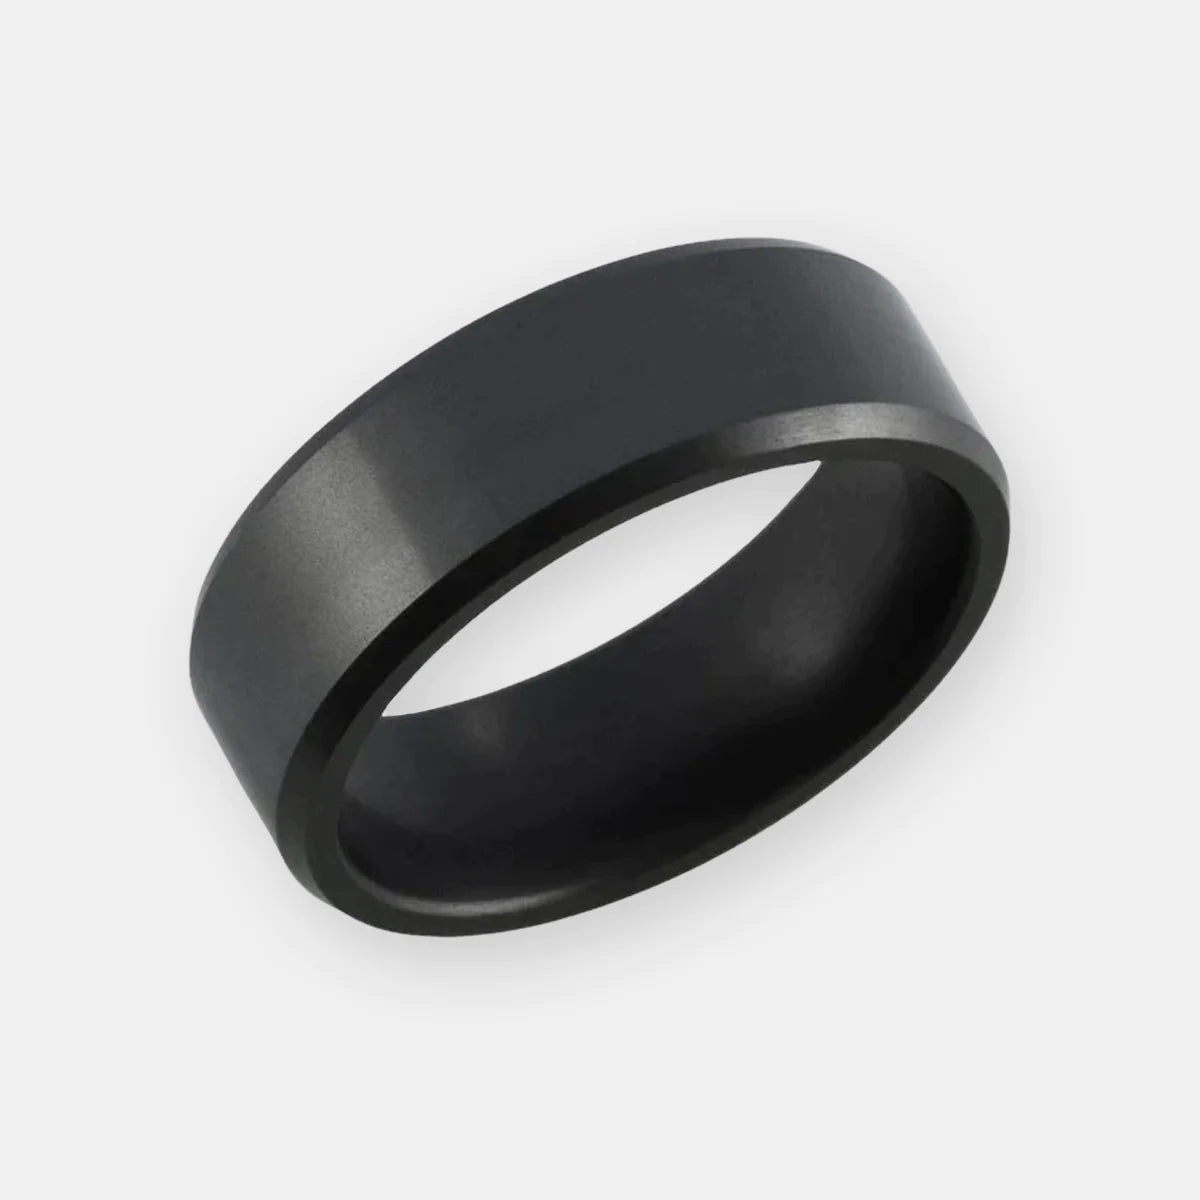 Solid Black Diamond Wedding Ring with Beveled Edge on White Background | Elysium Black Diamond Ring - Elysium Ares 8mm - Beveled Solid Black Diamond Ring | Products | Image 1